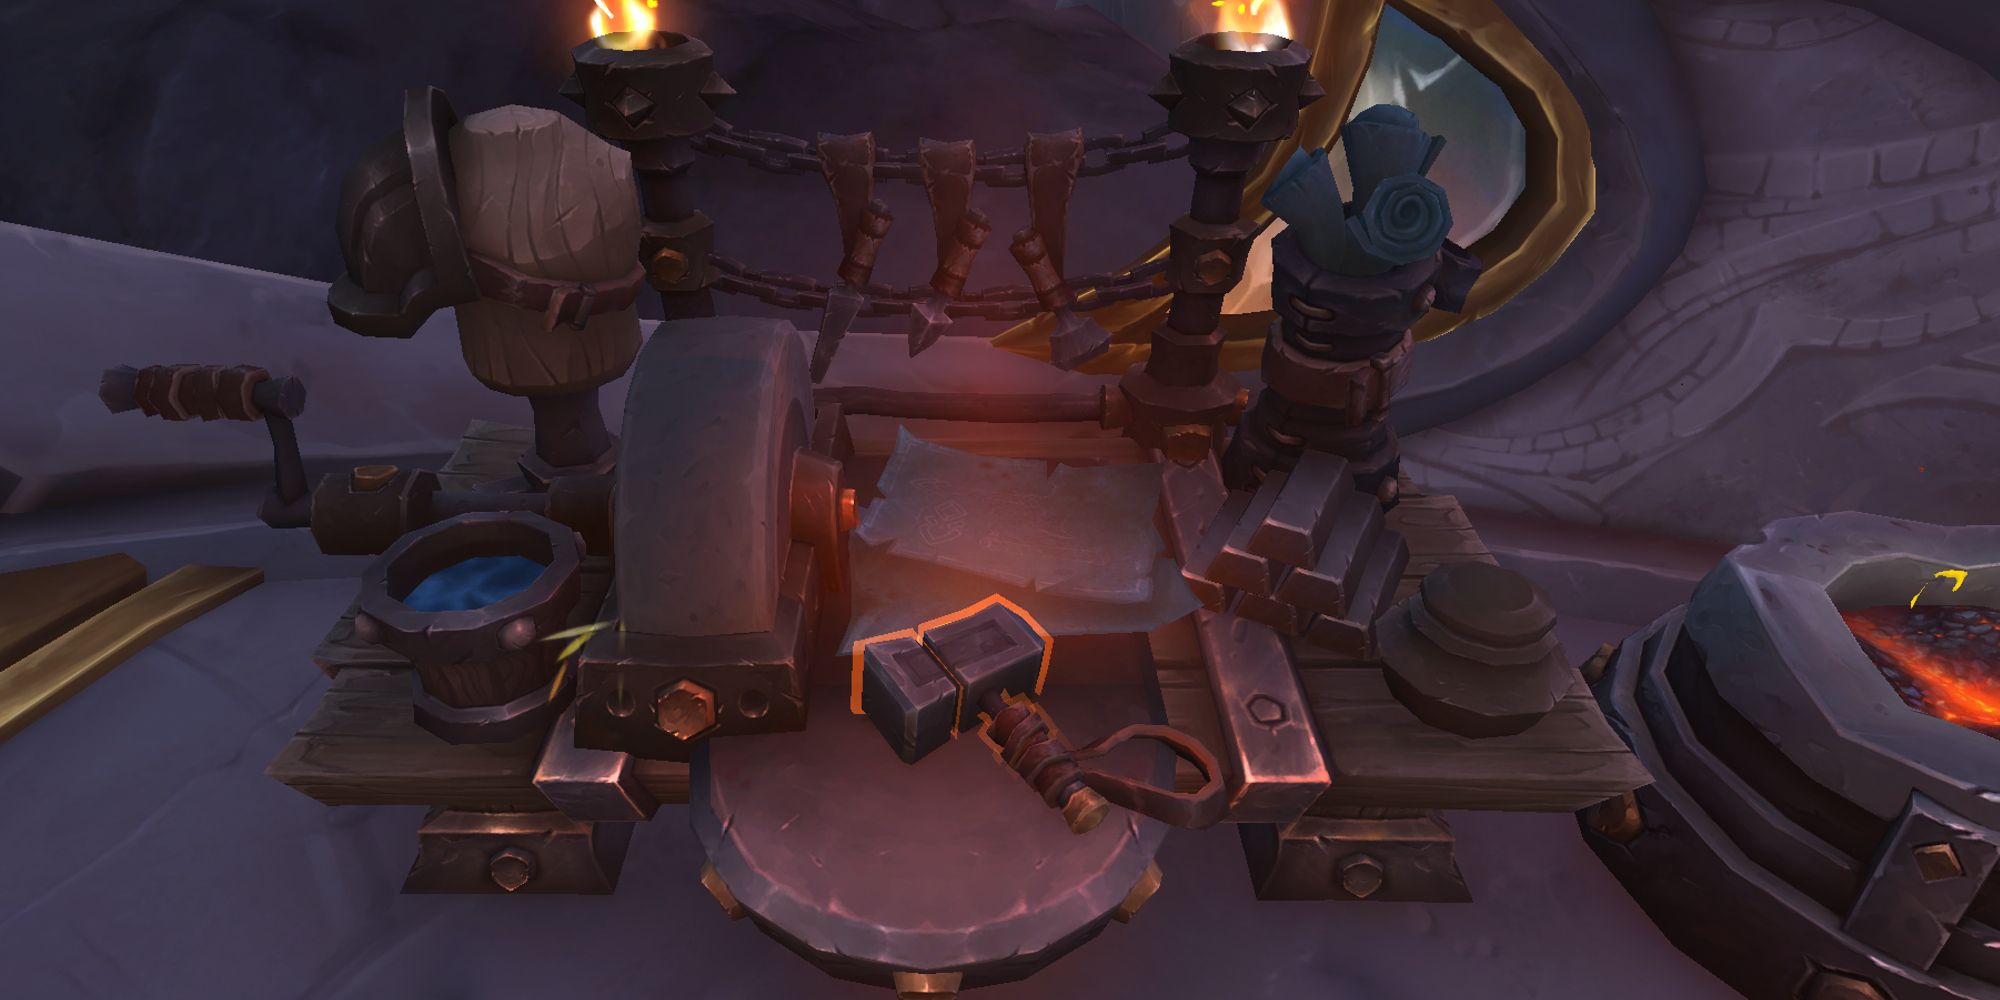 Blacksmith workbench as seen in Valdrakken in World of Warcraft Dragonflight